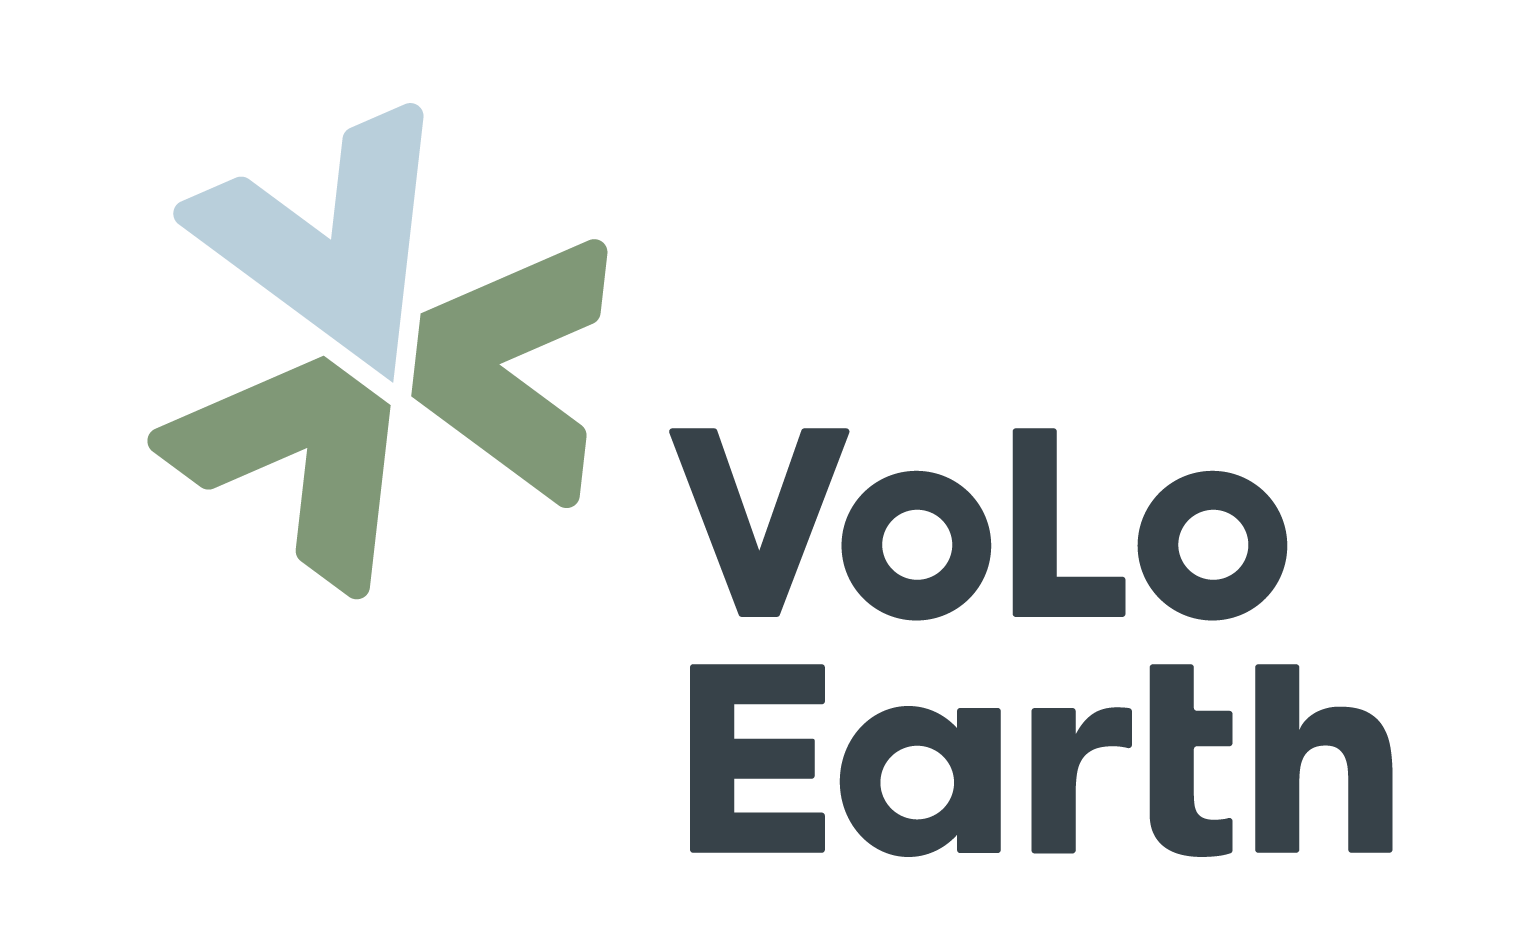 VoLo Earth Ventures